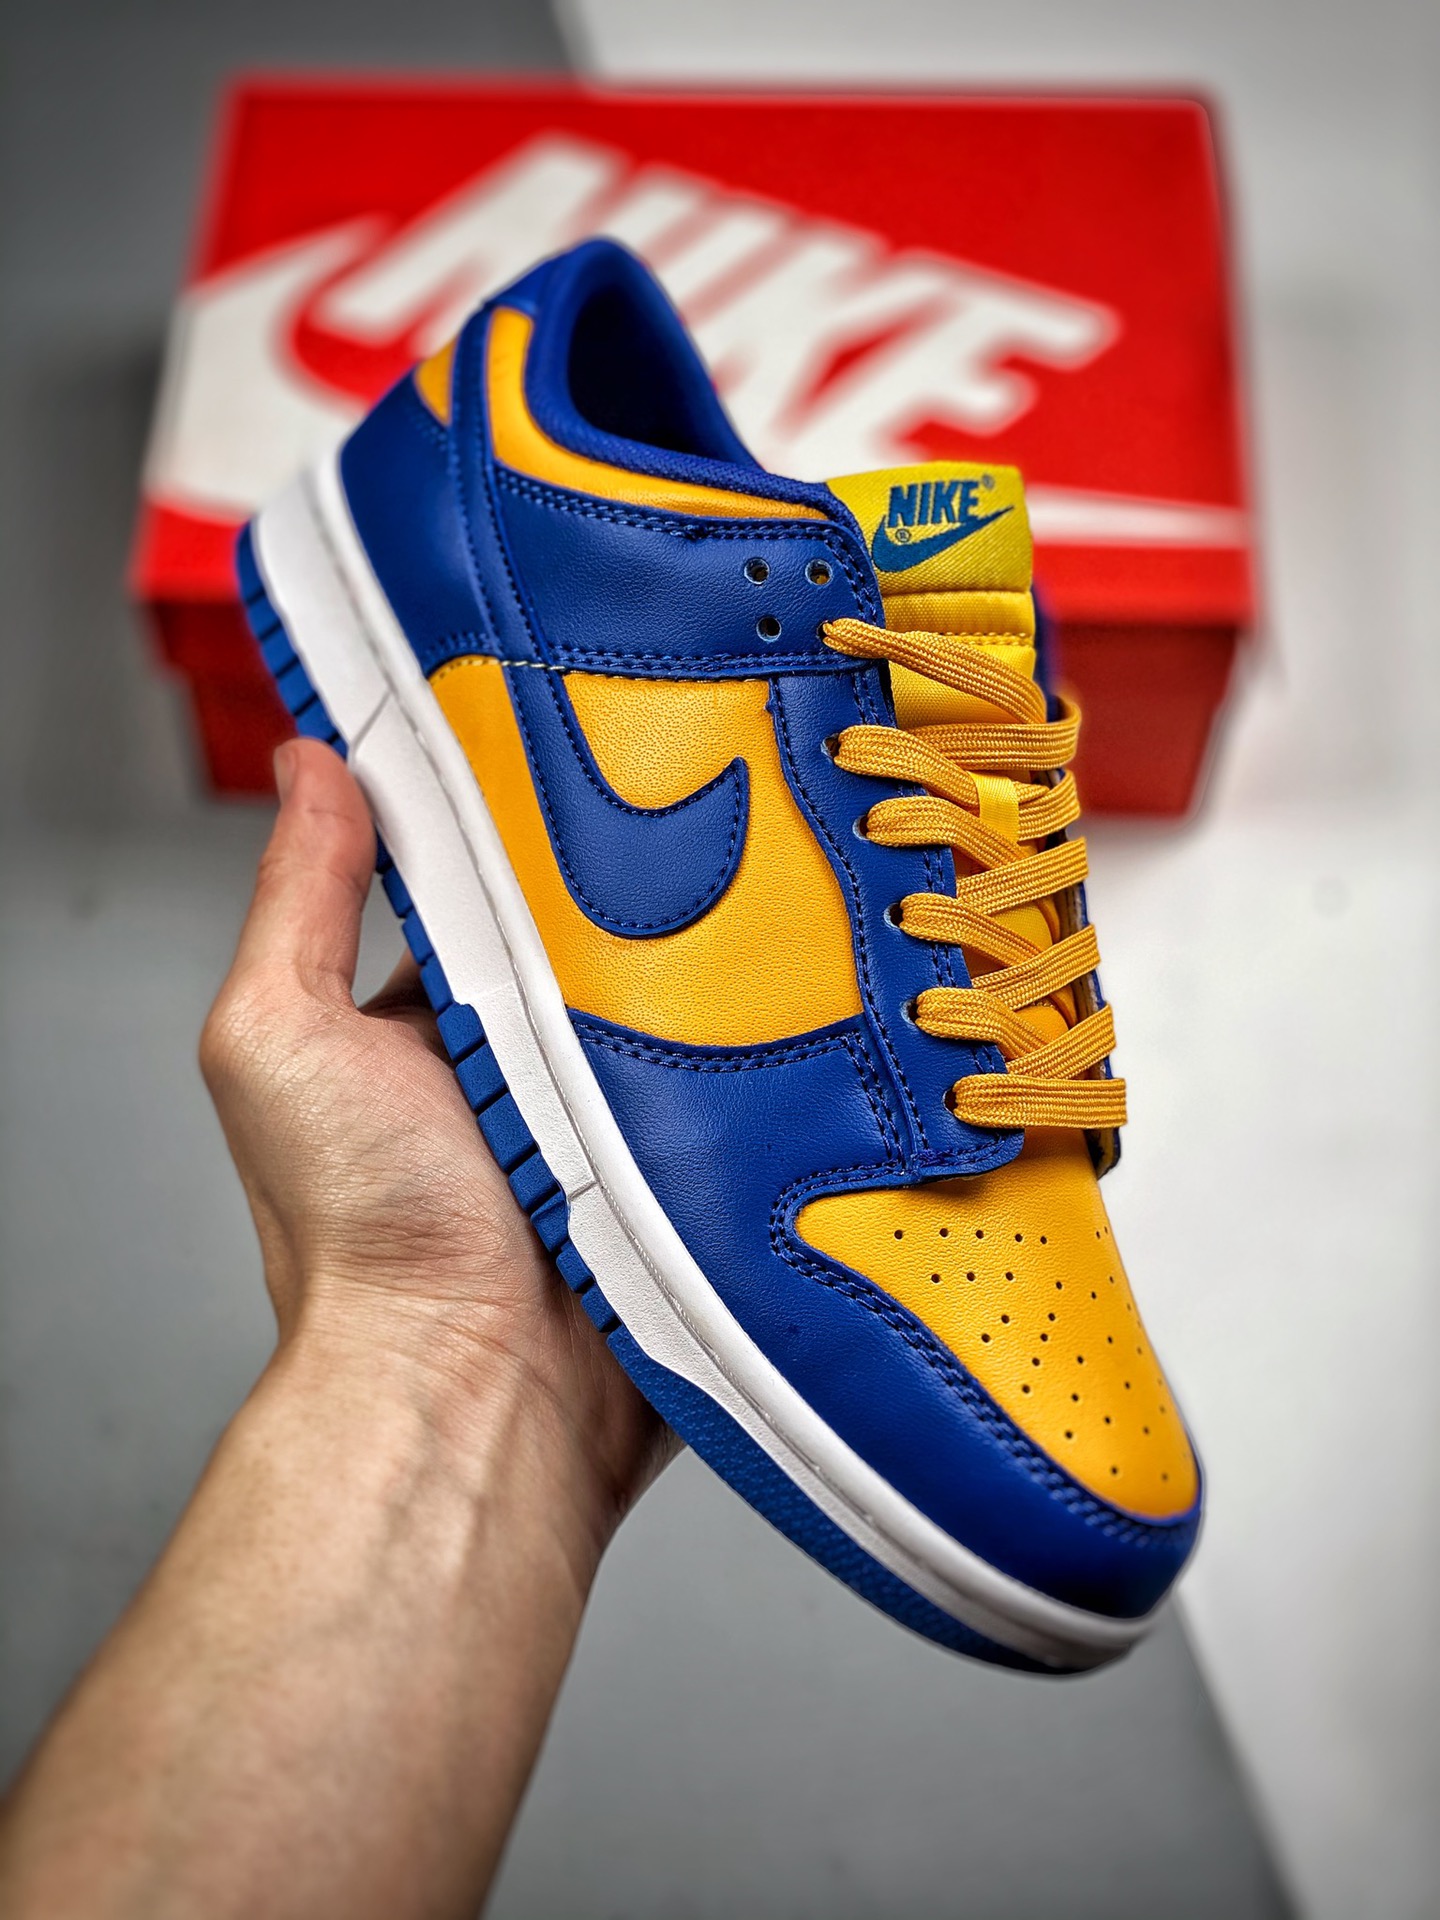 Nike Dunk Low "UCLA" Blue Jay/University Gold-White Shoes